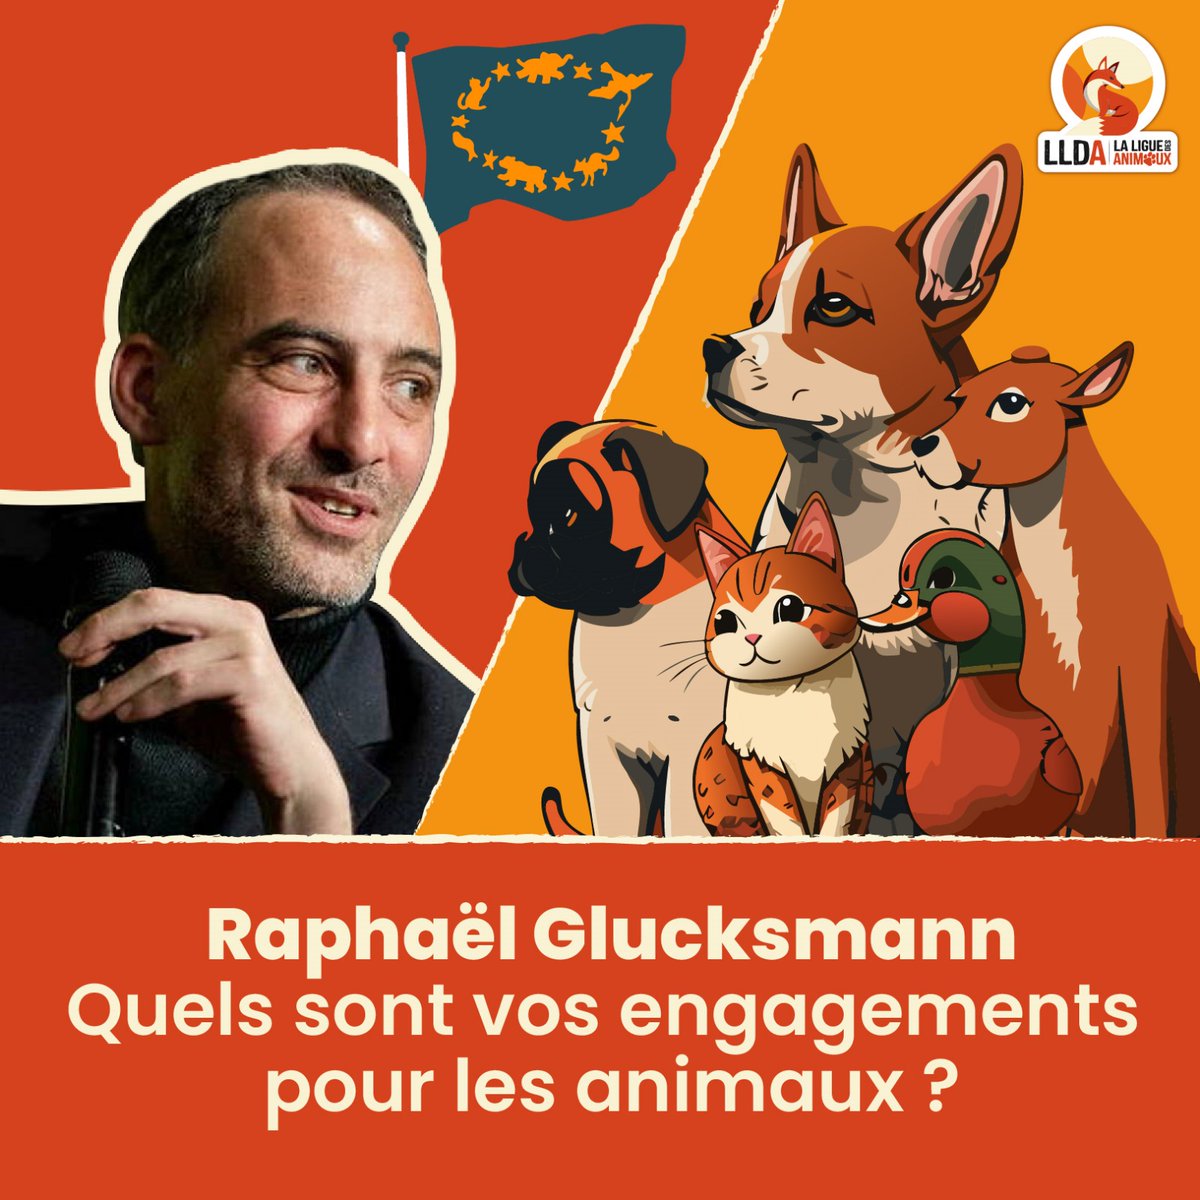 La Ligue Des Animaux demande à @rglucks1 de se positionner sur la condition animale en remplissant notre charte. Quels sont vos engagements pour les animaux ? #ElectionsEuropéennes2024